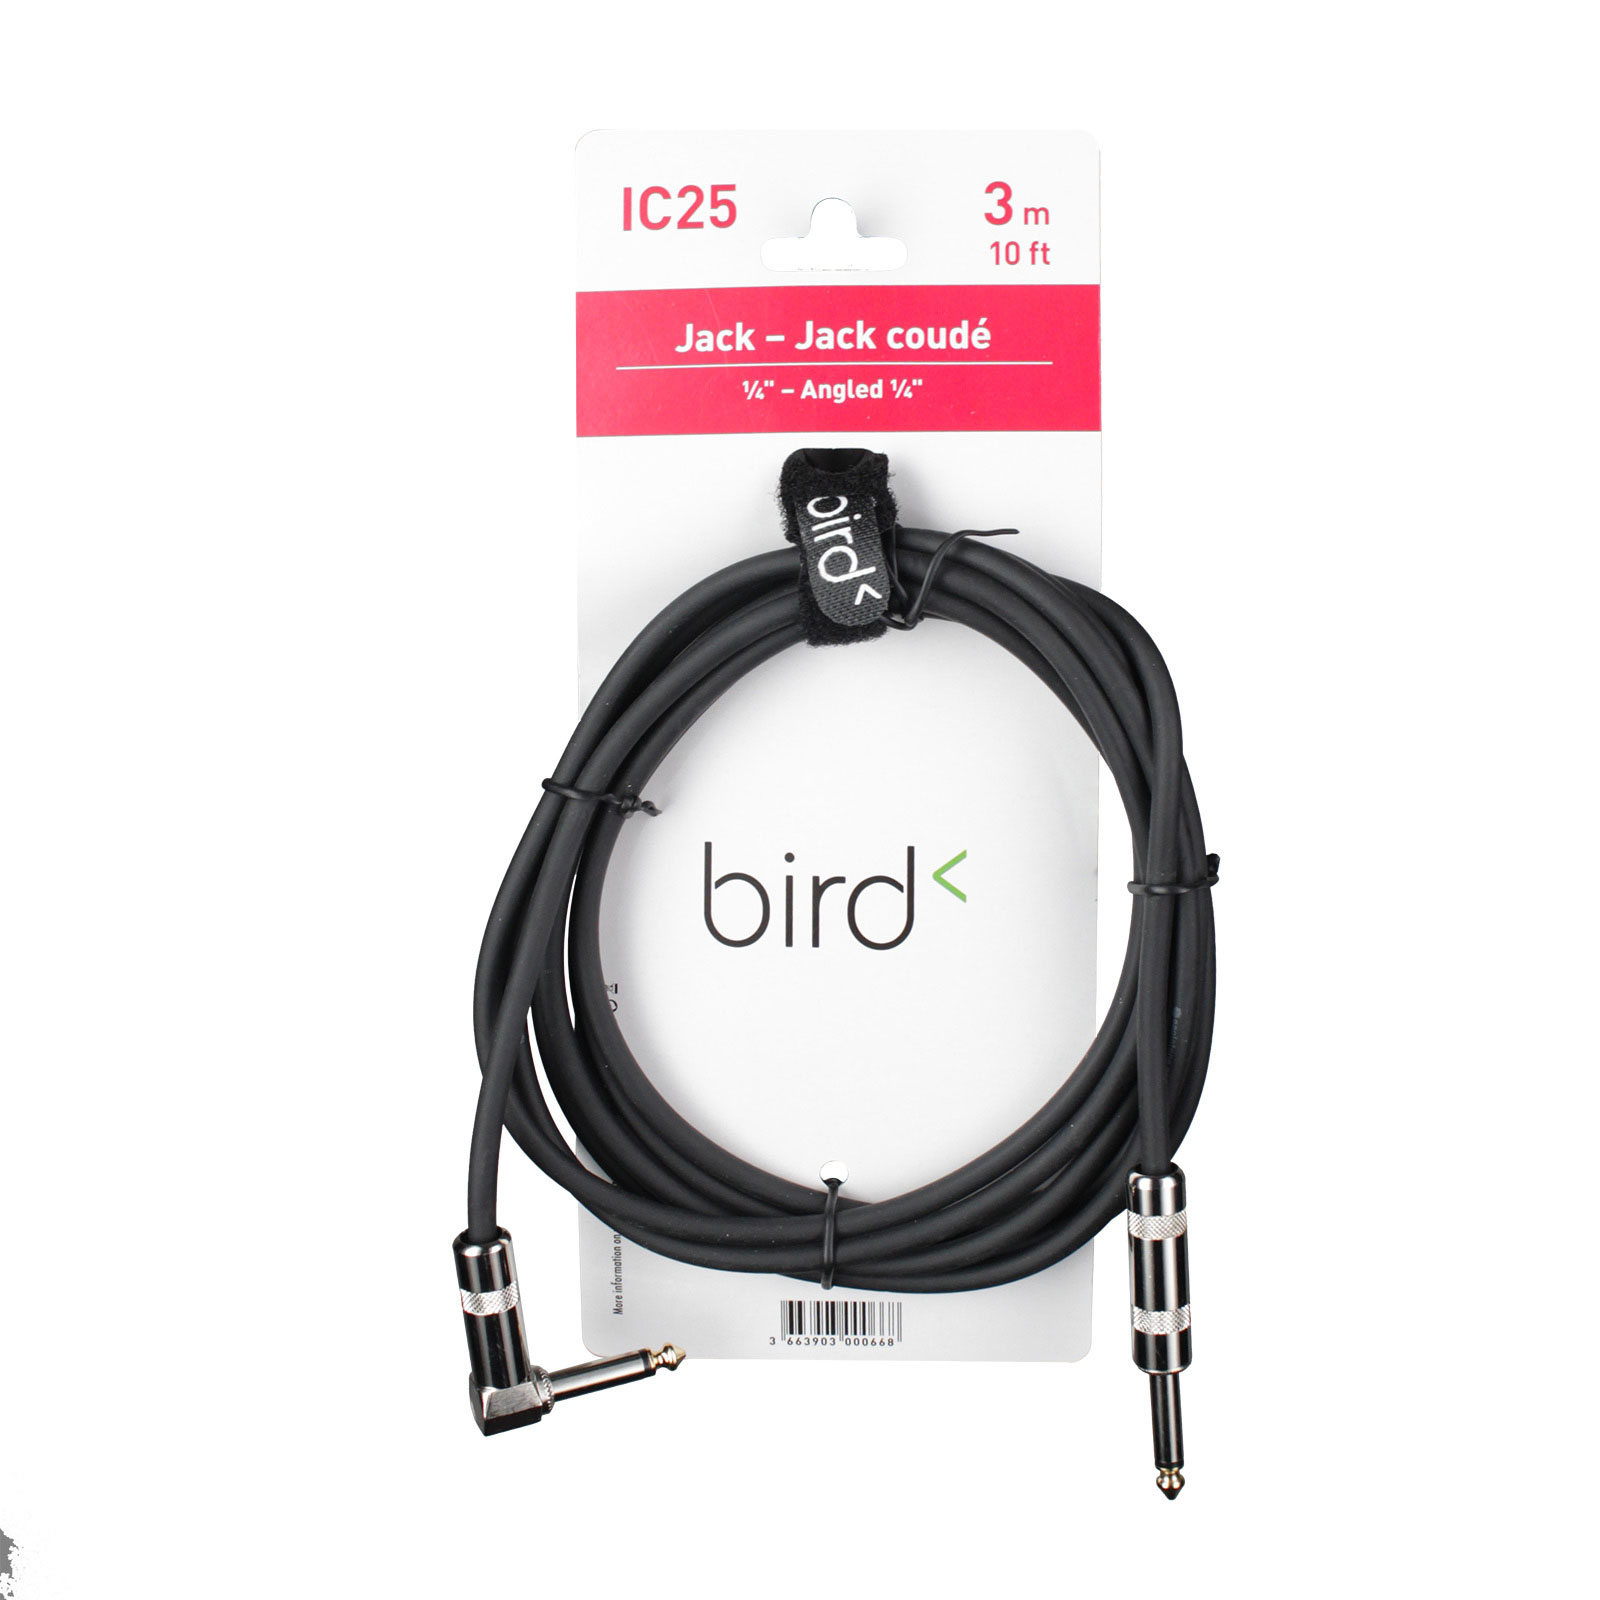 BIRD IC25 - JACK COUDE / JACK - 3M